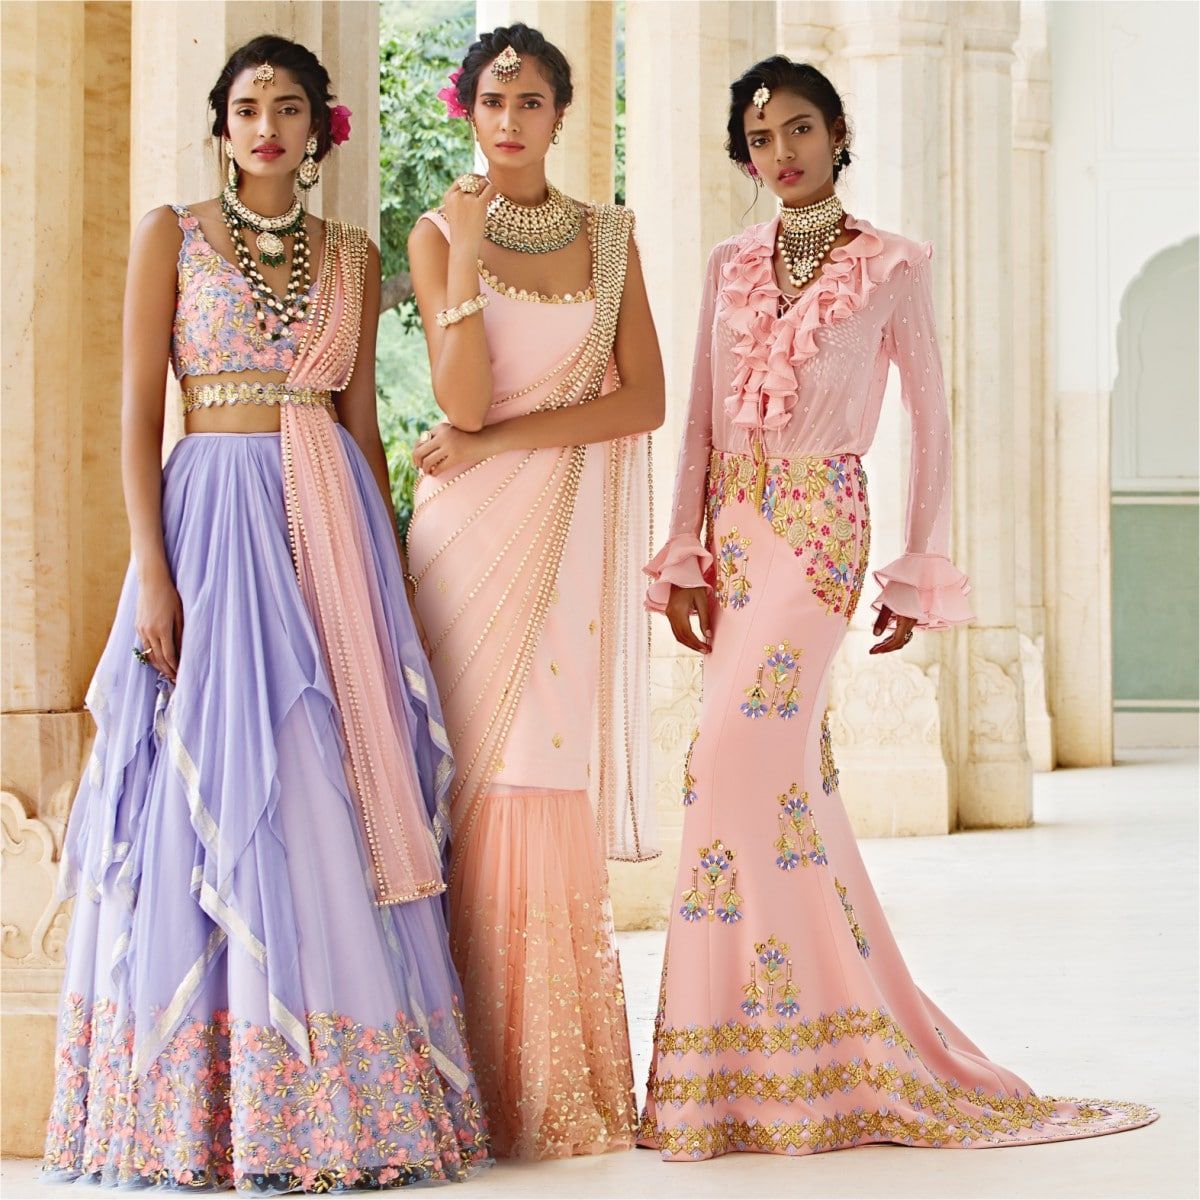 Bridal Asia, The Delhi Edition